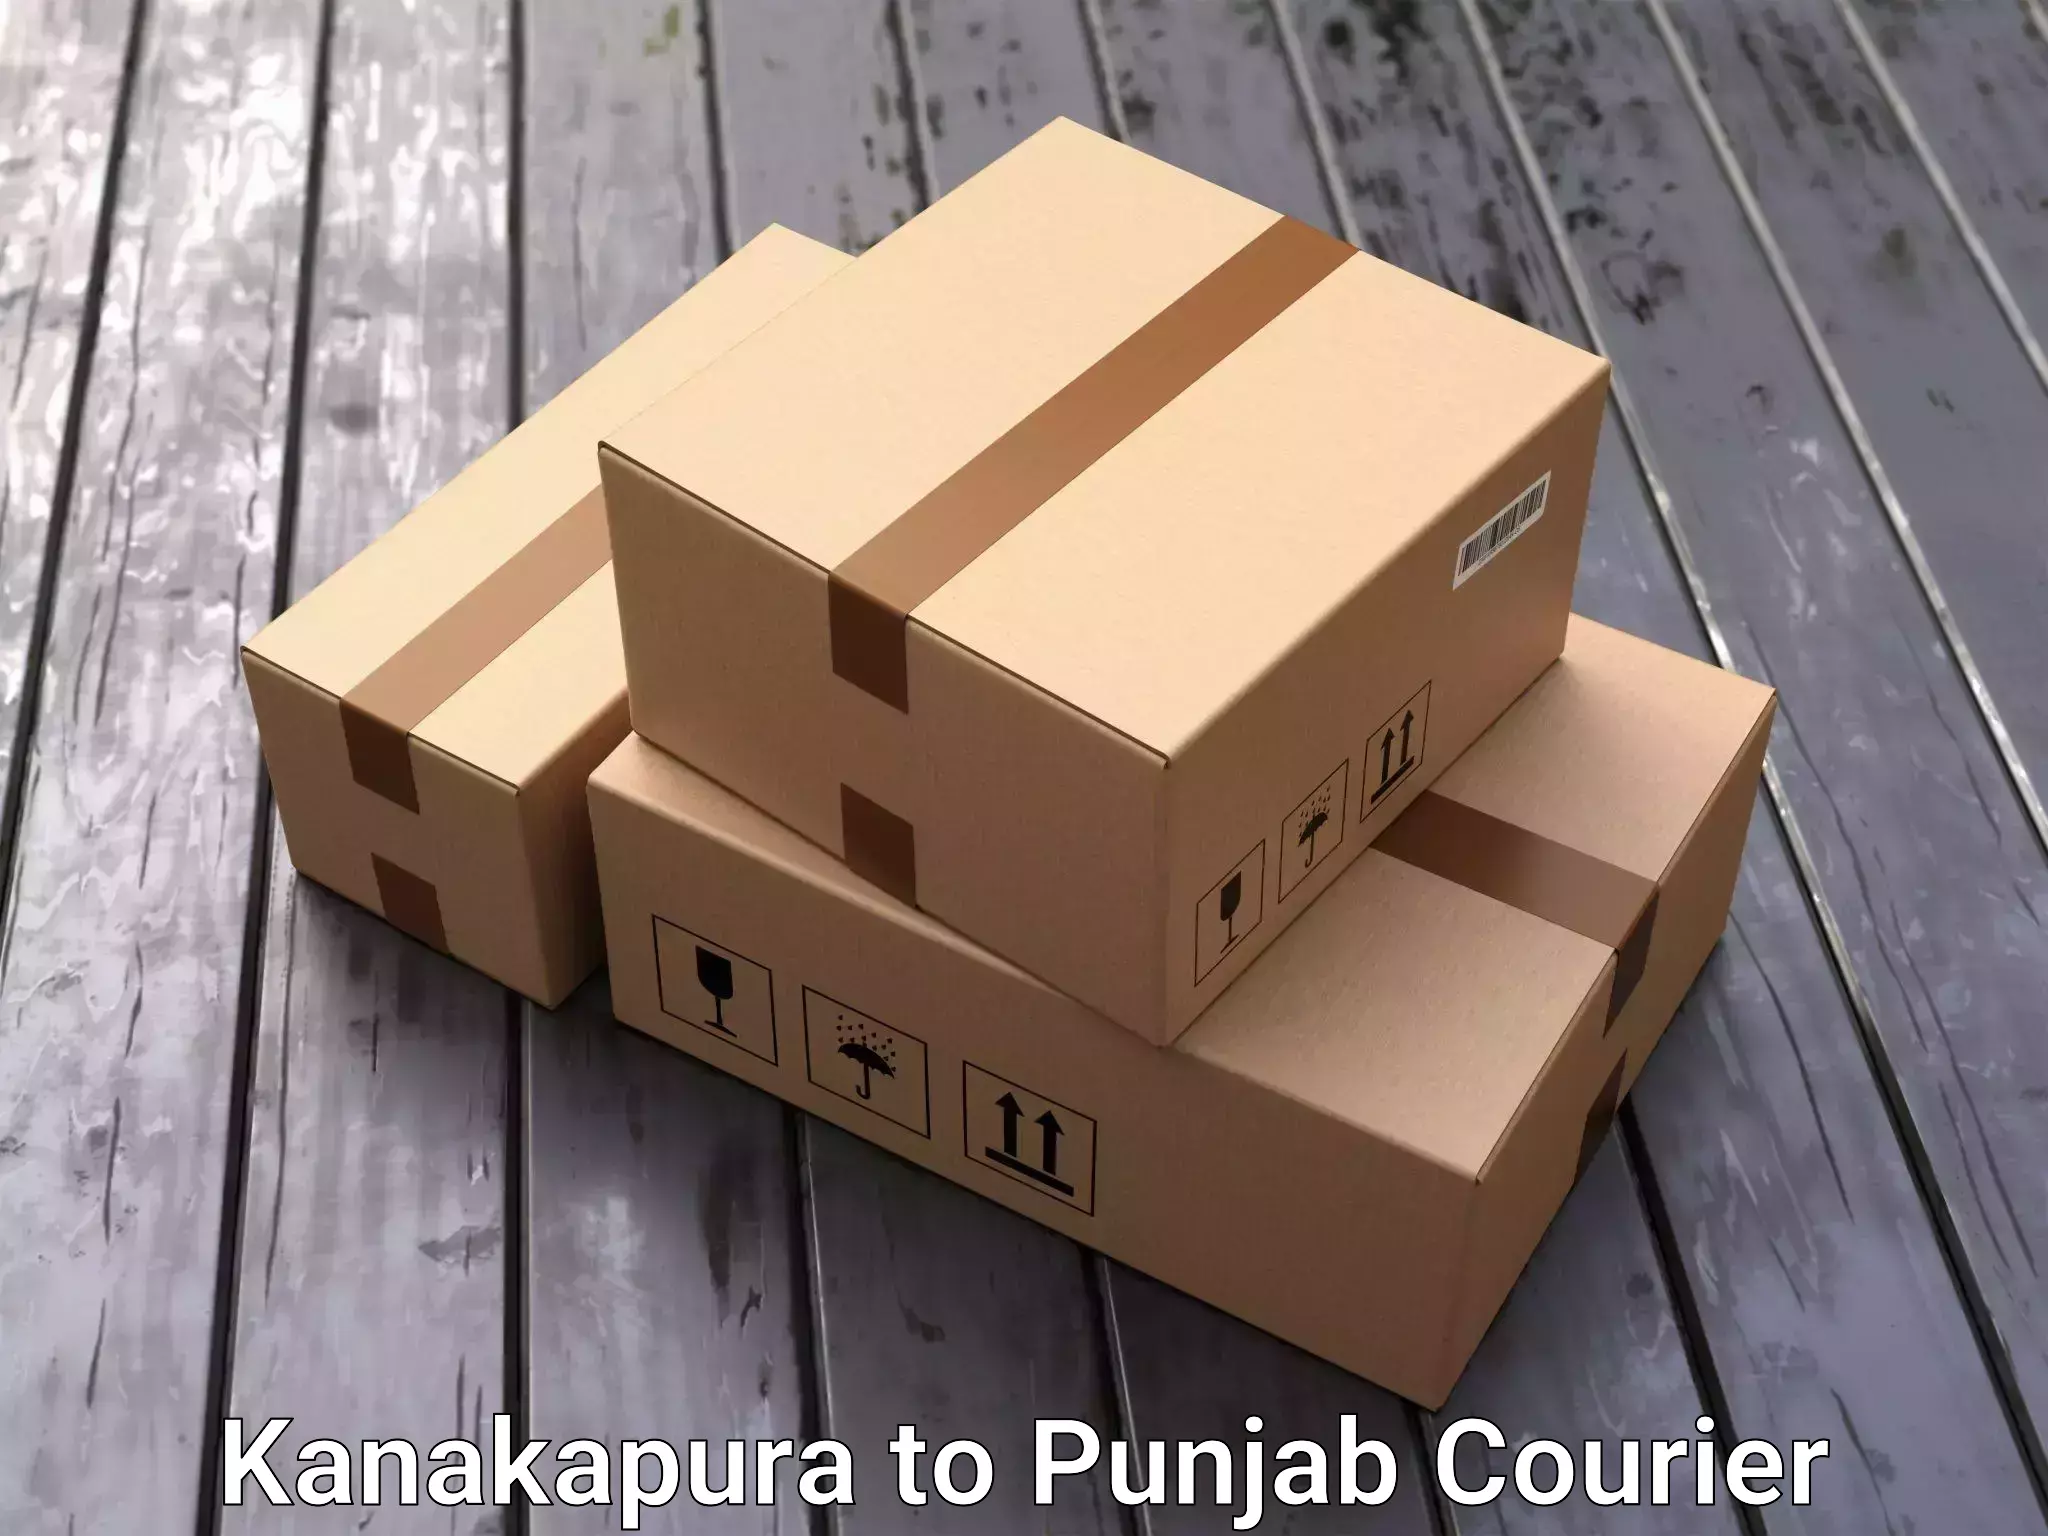 Efficient packing and moving Kanakapura to Rajpura